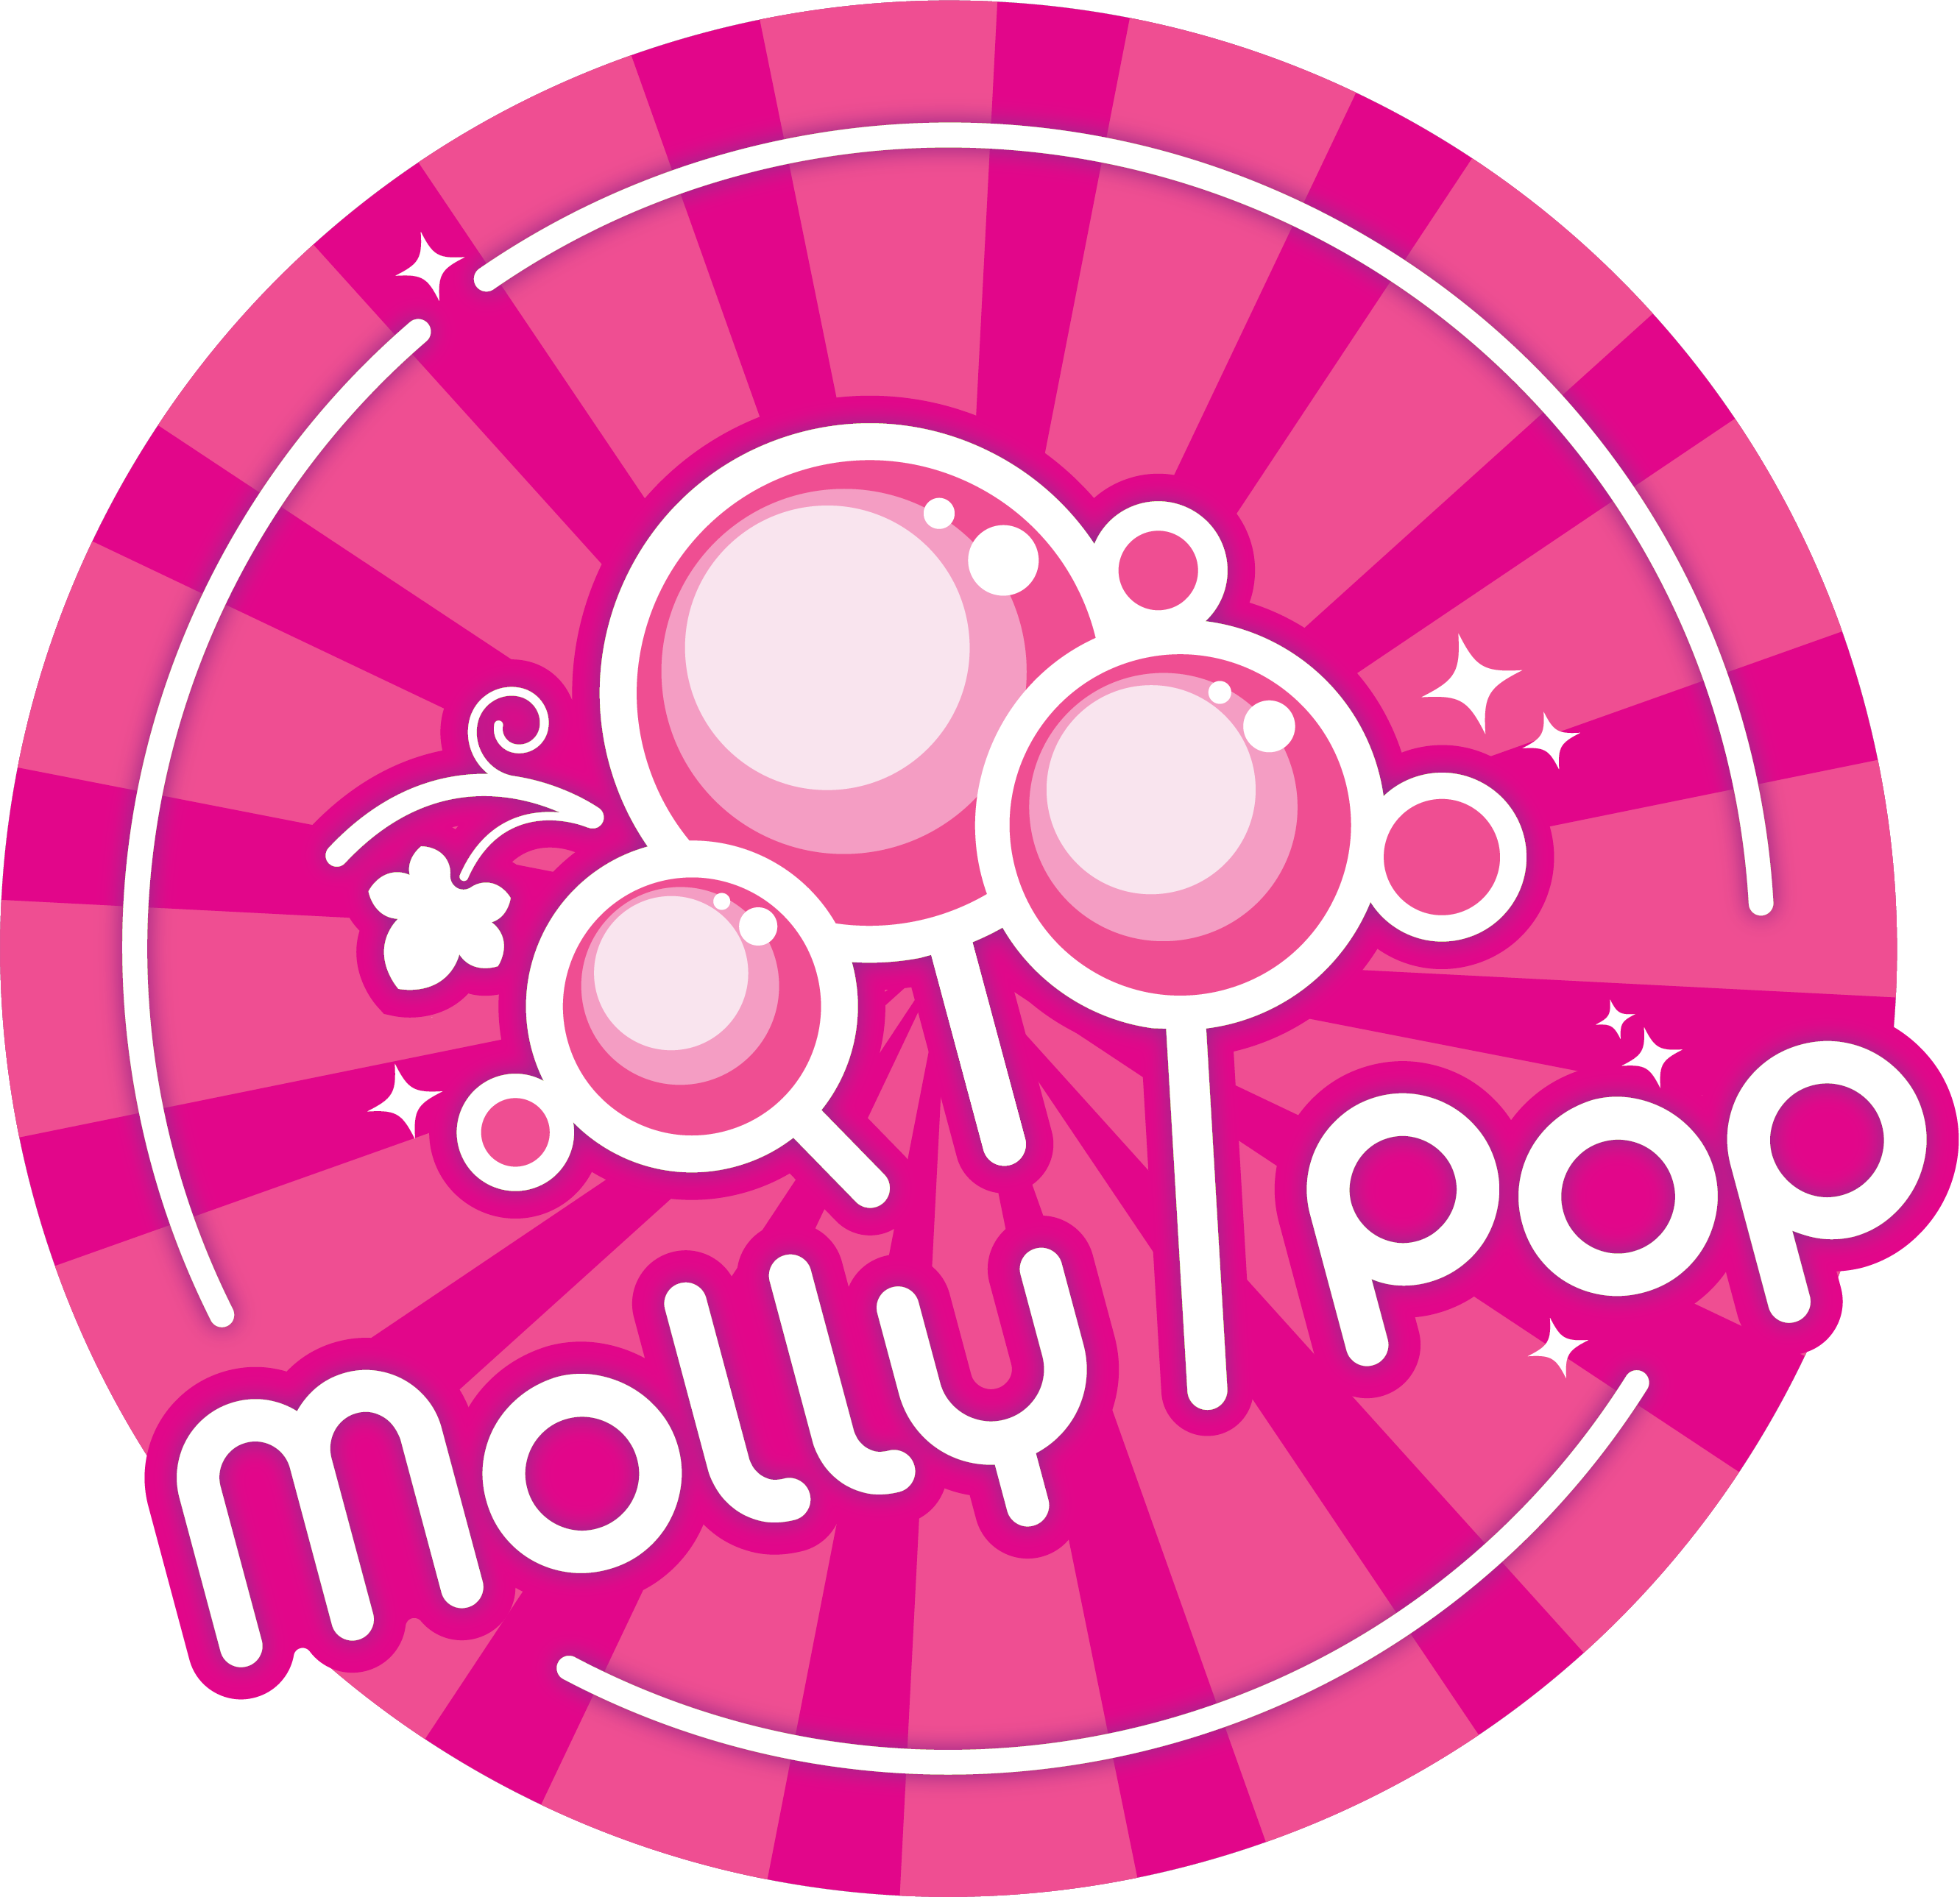 Molly Pop